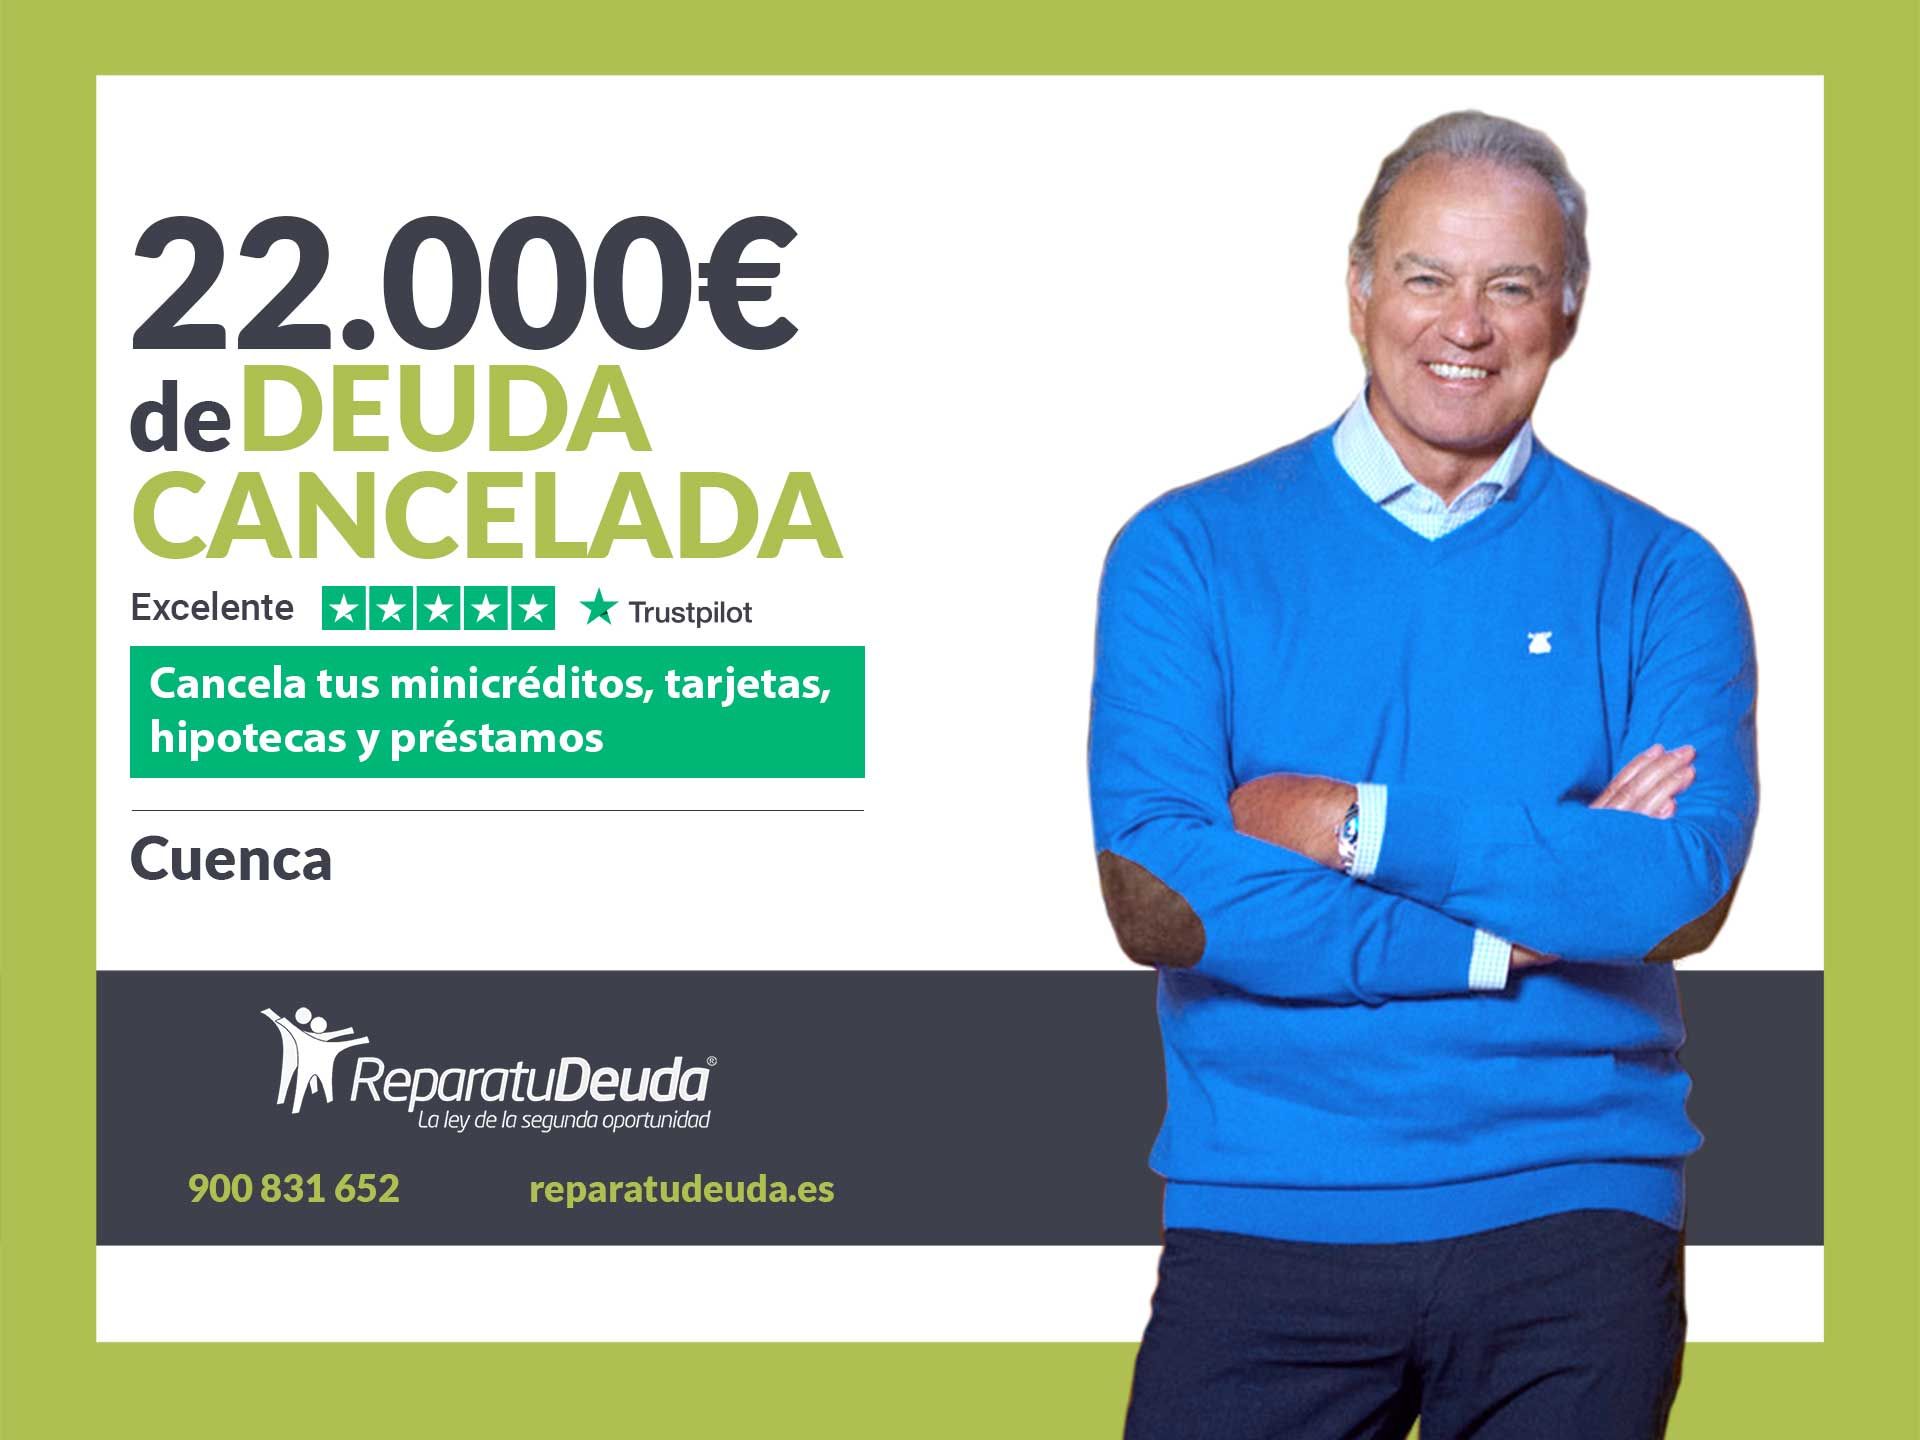 Repara tu Deuda Abogados cancela 22.000? en Cuenca (Castilla-La Mancha) con la Ley de Segunda Oportunidad